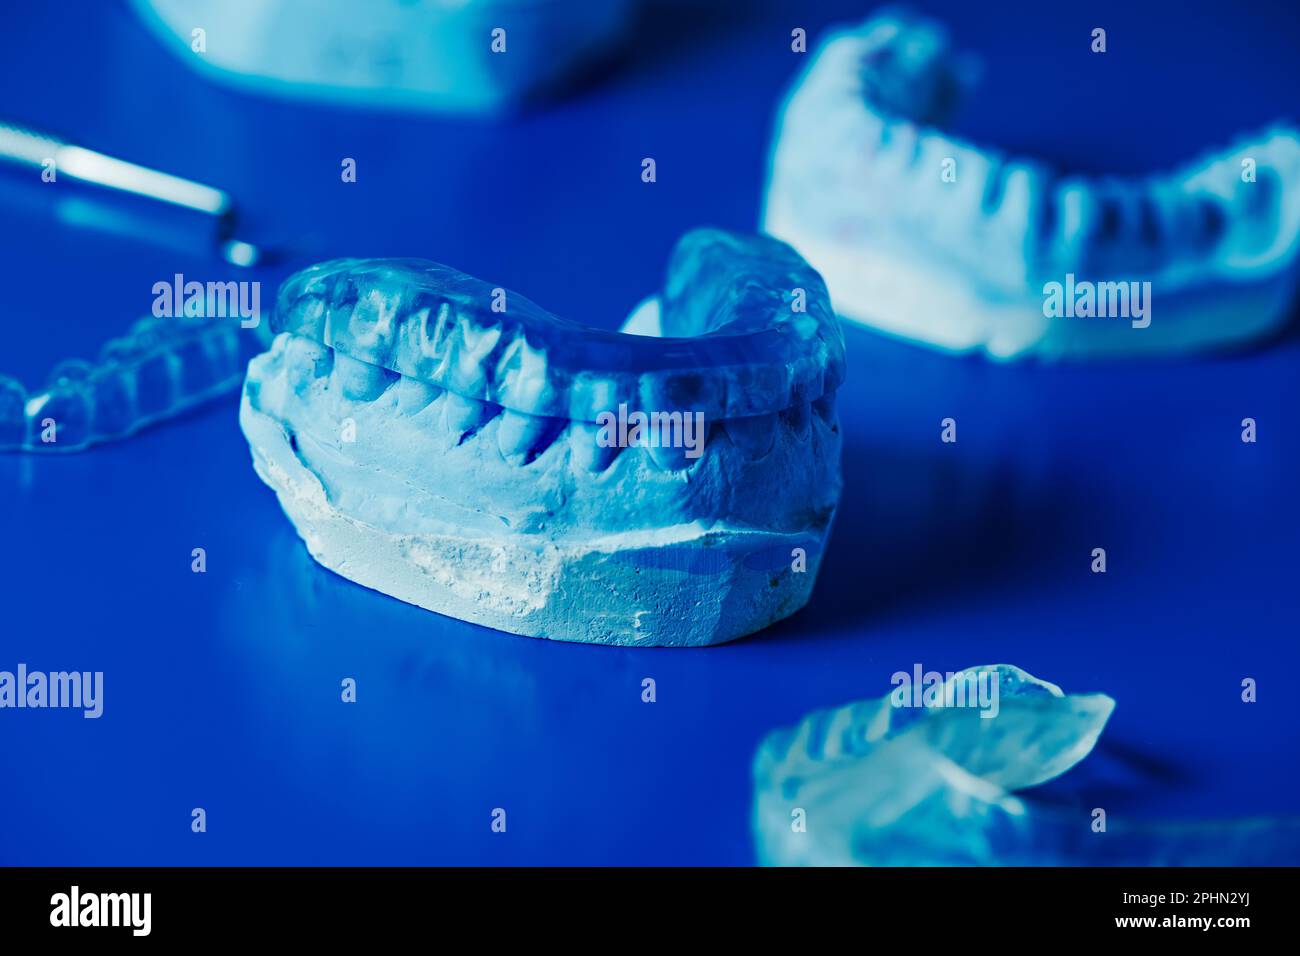 closeup di una stecca occlusale in uno stampo dentale su una superficie blu accanto ad alcuni altri stampi dentale e stecche occlusali Foto Stock